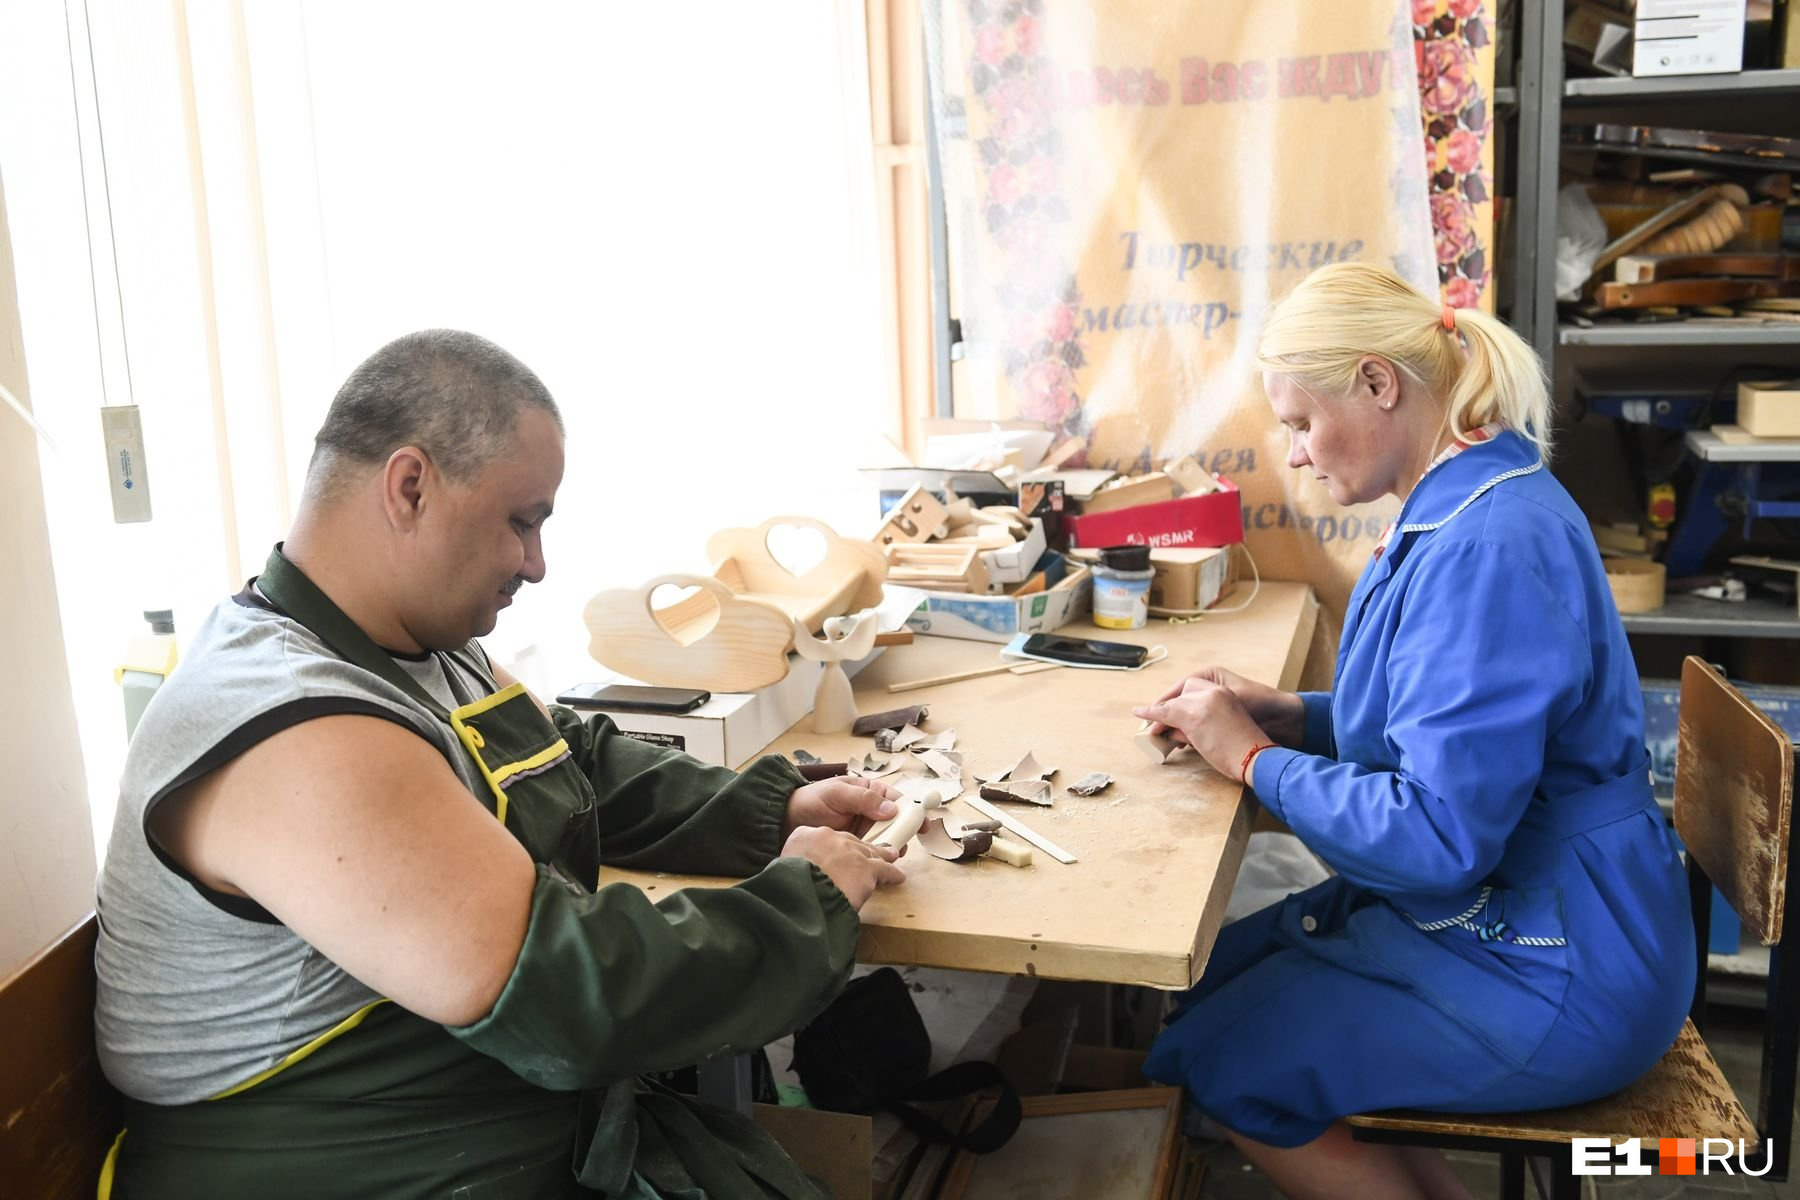 В мастерских «Благого дела» занимаются люди с инвалидностью, несколько человек приехали из пансионатов на сопровождаемое проживание